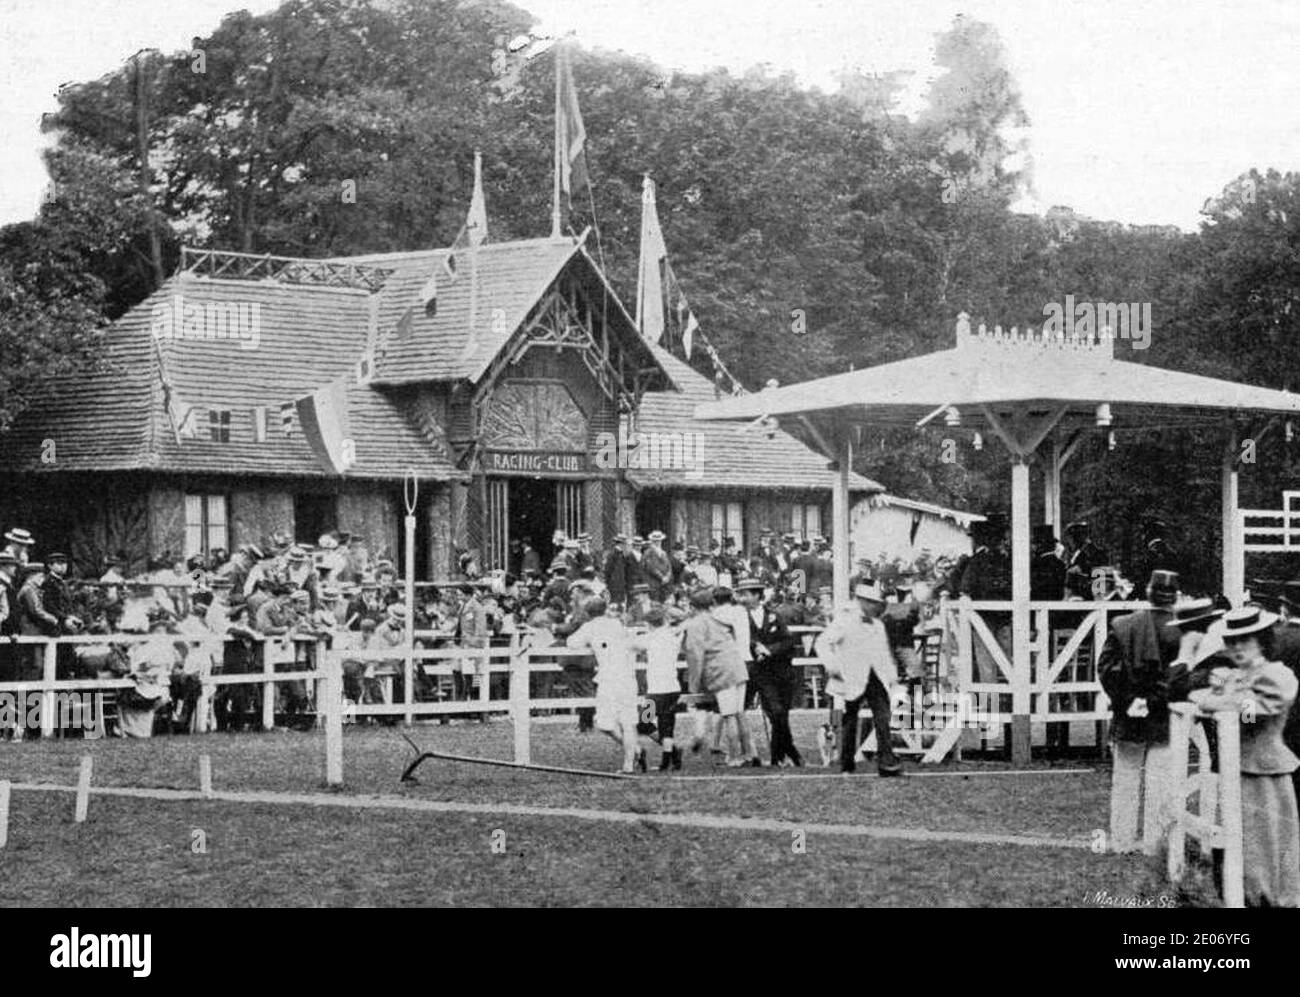 Le nouveau Chalet de Racing Club de France, en juillet 1896 pour les championnats de France d'atlhétisme. Stockfoto